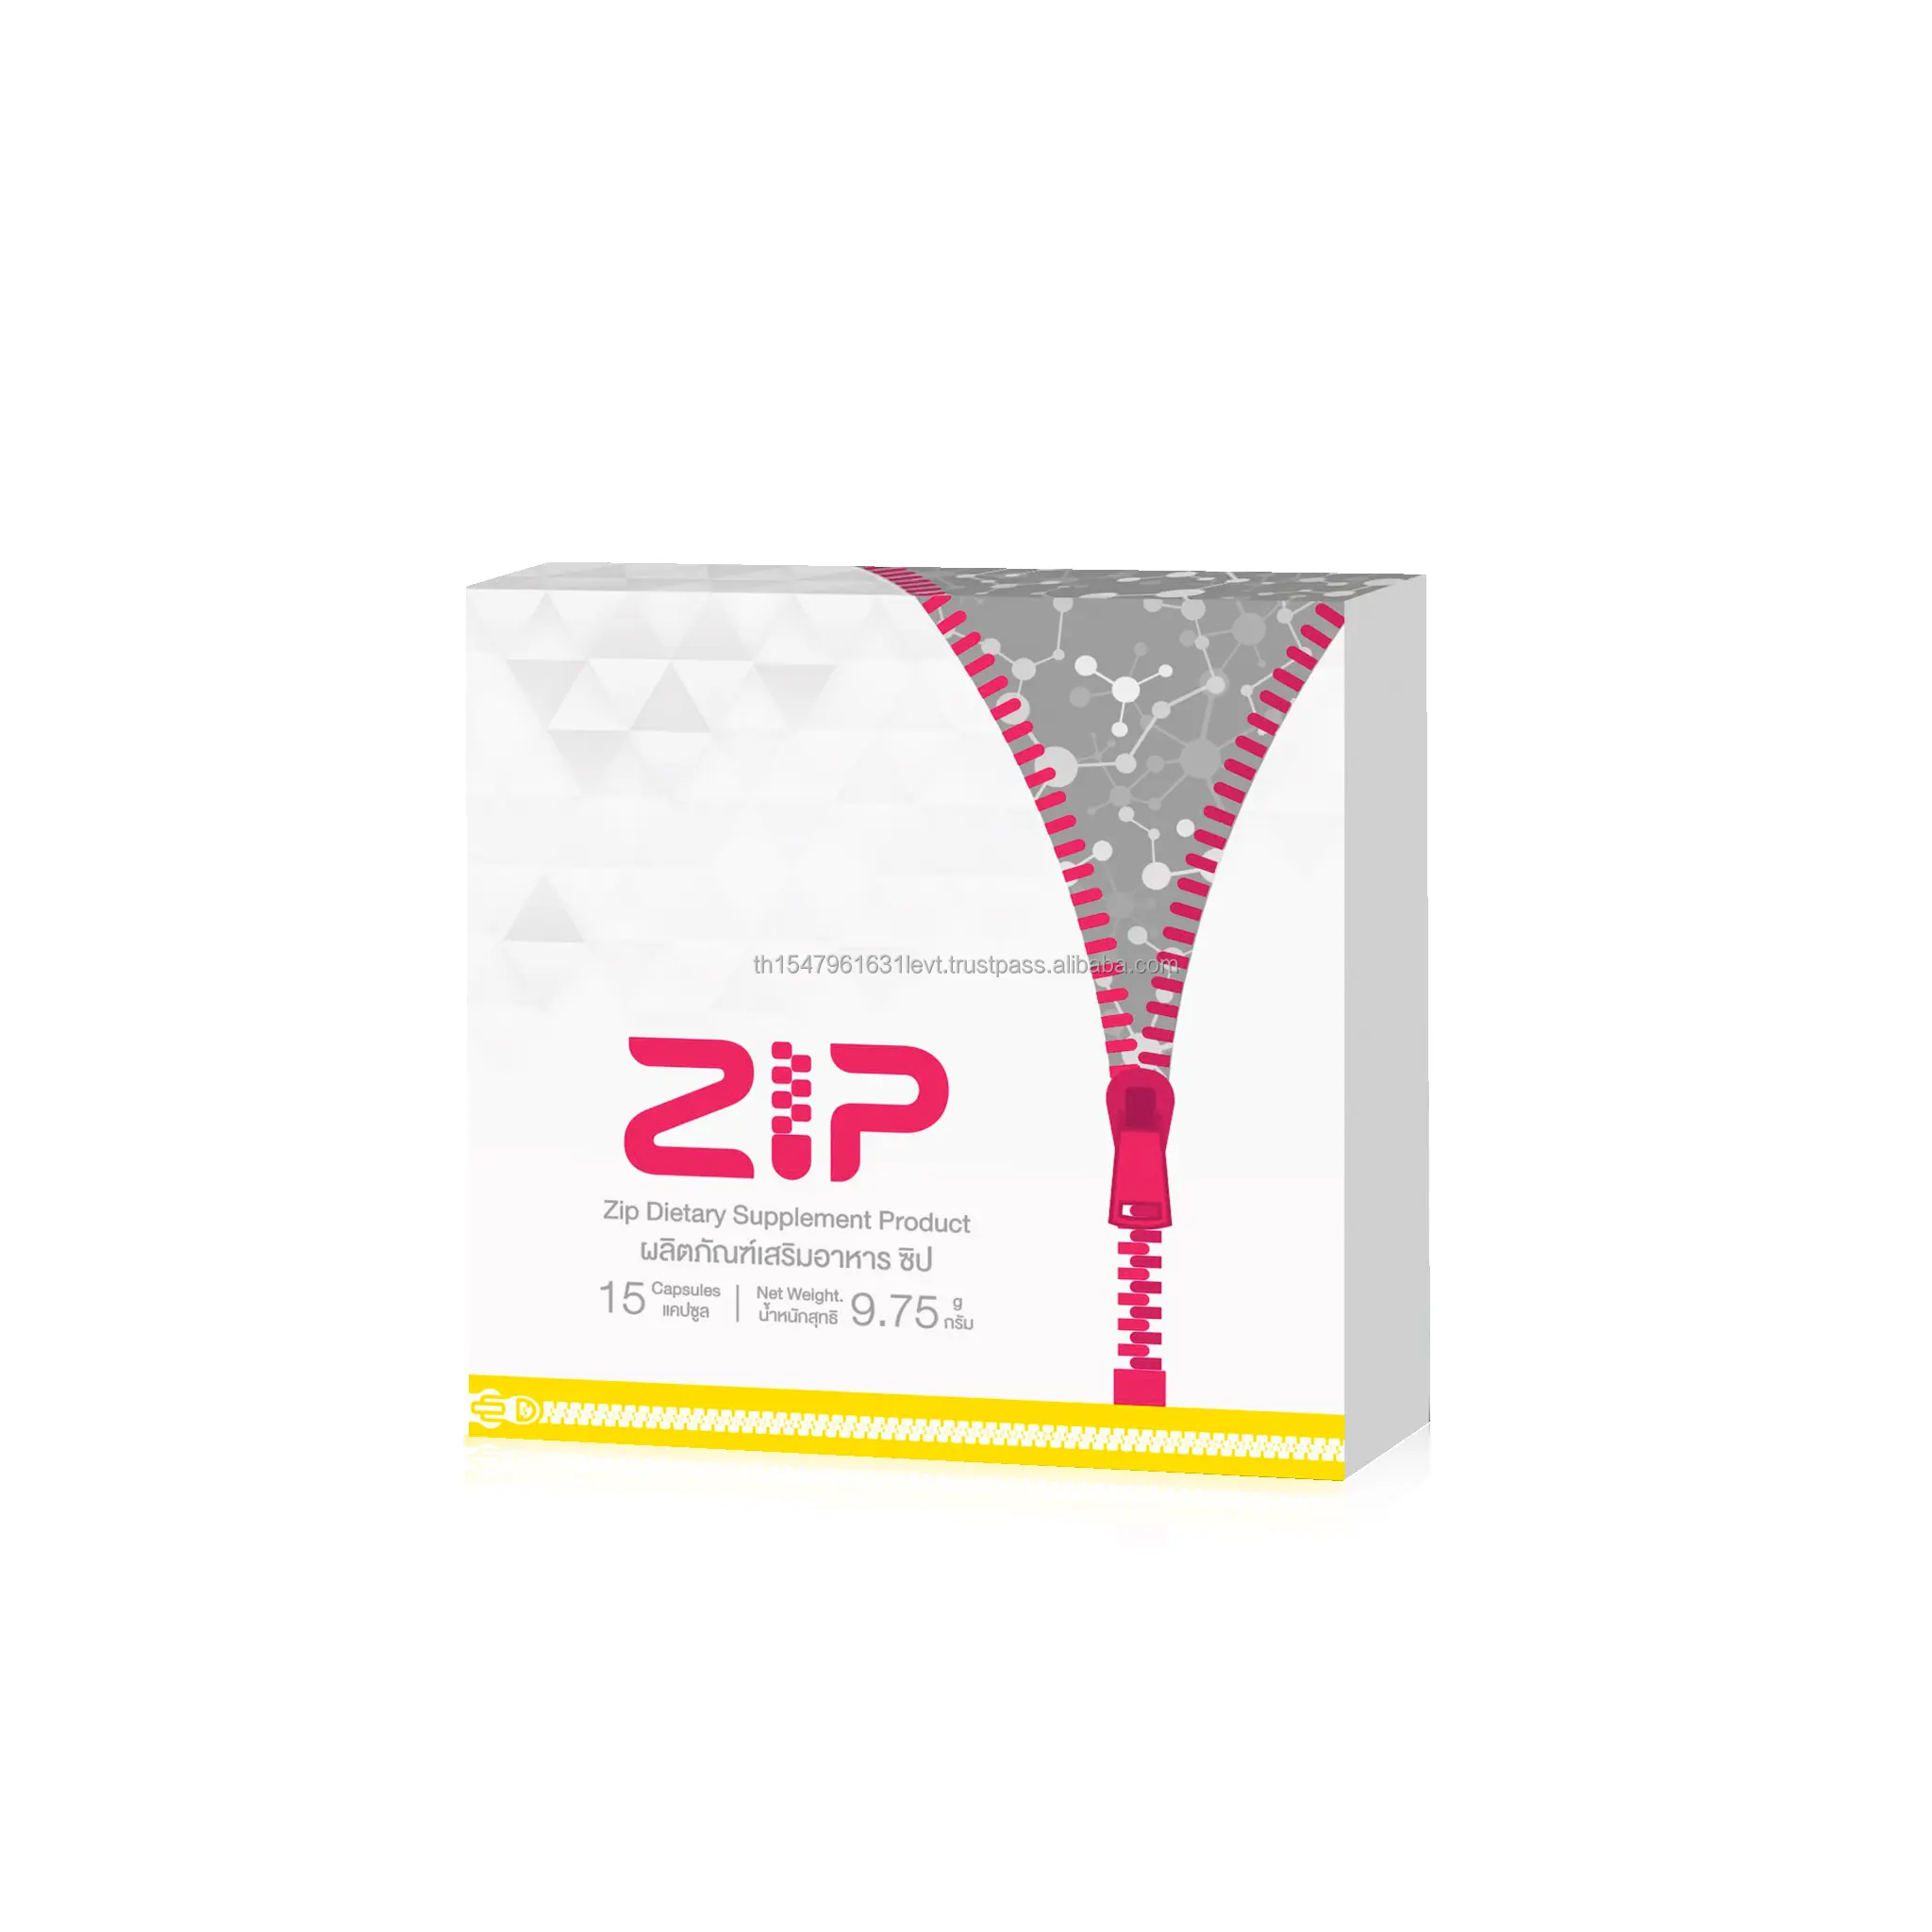 גוף רזה Zip תוספי תזונה מוצר Zip שליטה משקל בריא